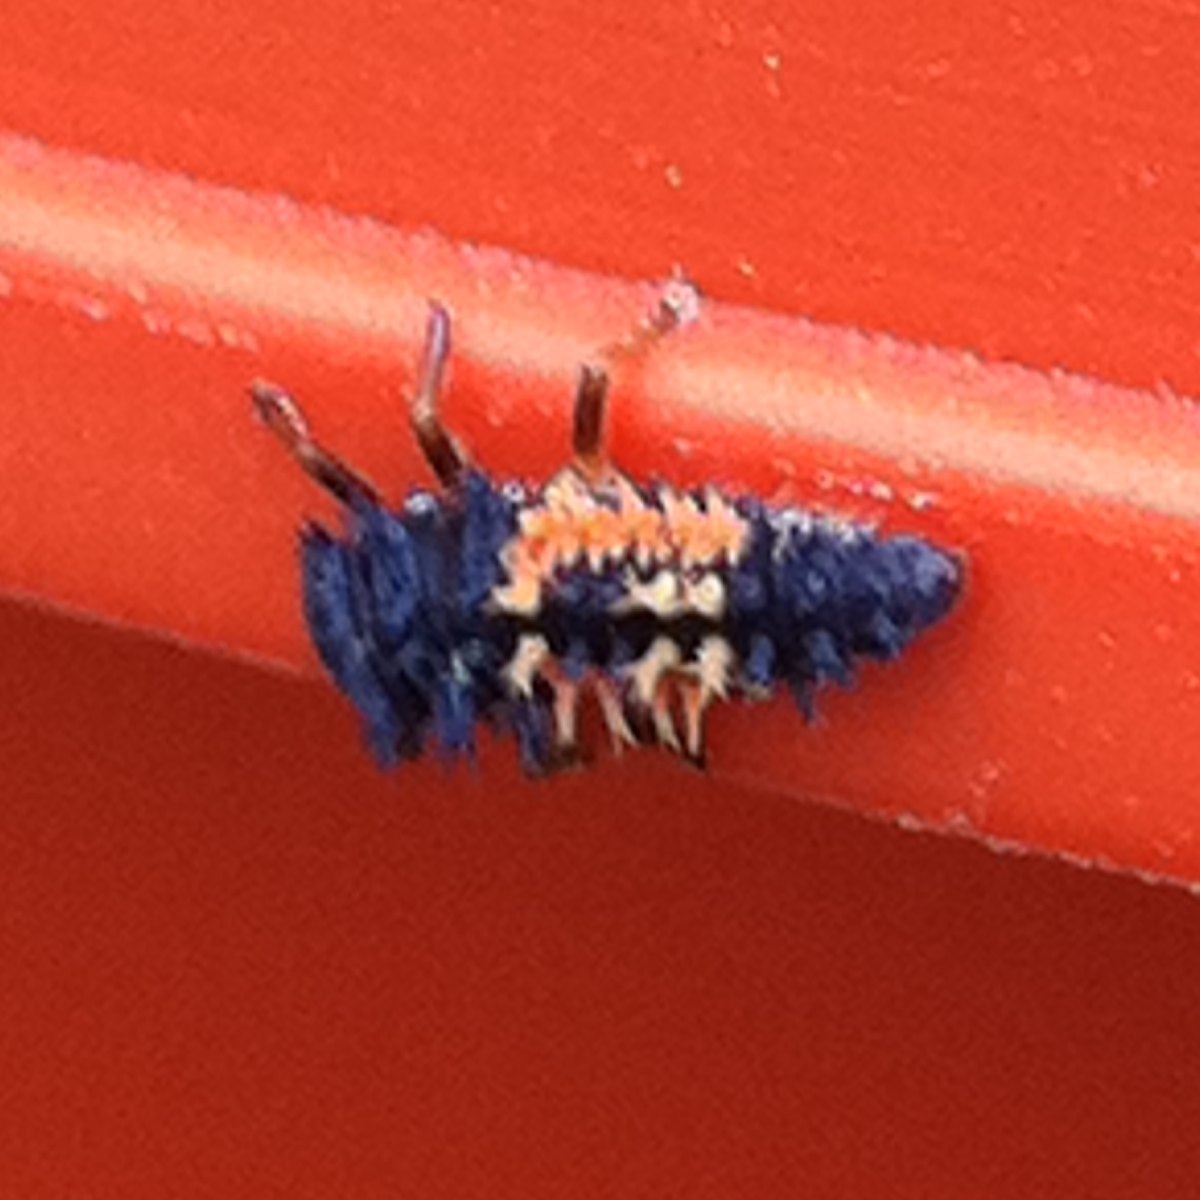 Multicolored Asian Lady Beetle Larvae